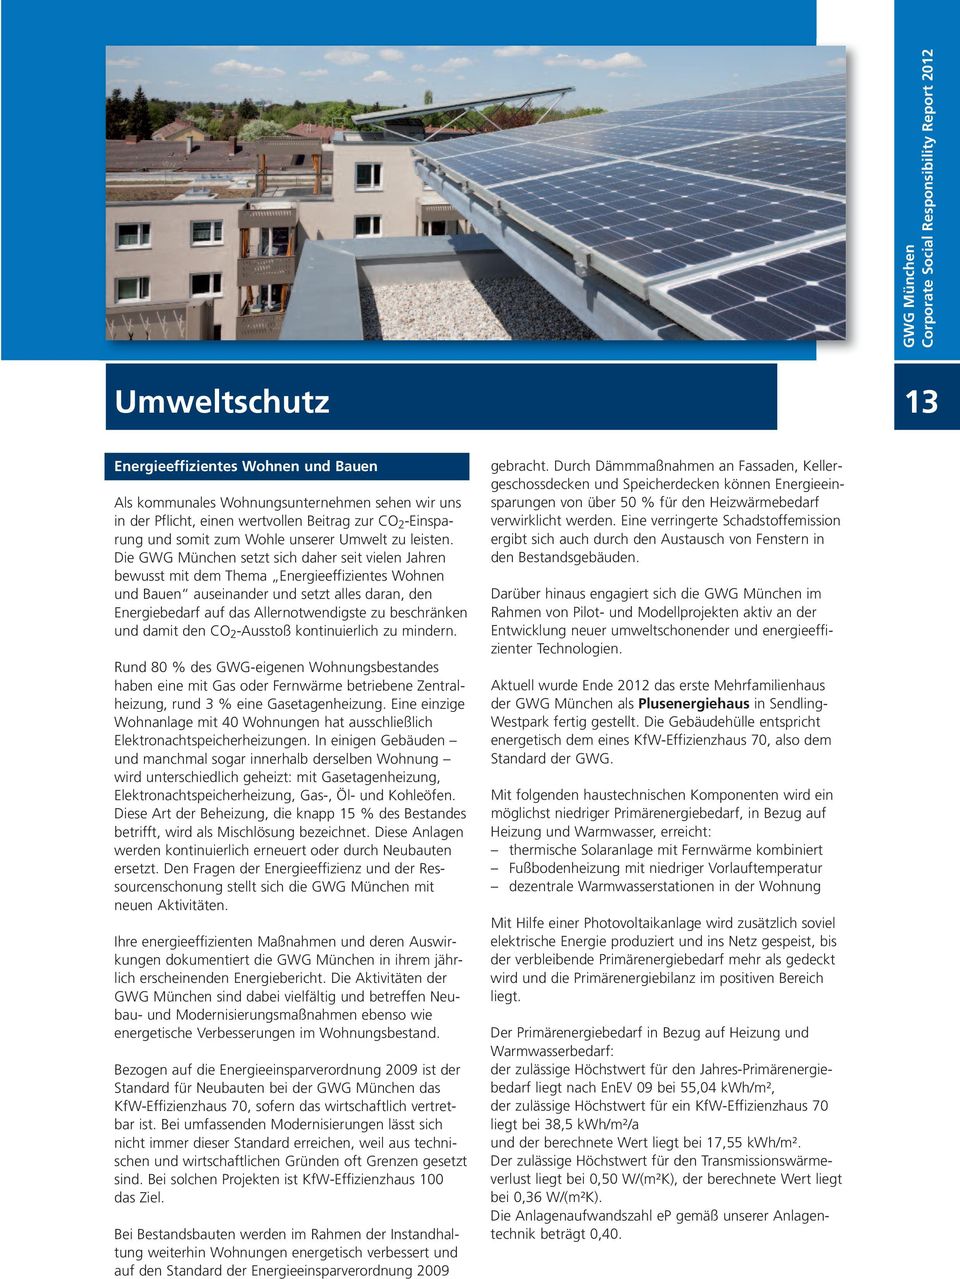 Die GWG München setzt sich daher seit vielen Jahren bewusst mit dem Thema Energieeffizientes Wohnen und Bauen auseinander und setzt alles daran, den Energiebedarf auf das Allernotwendigste zu